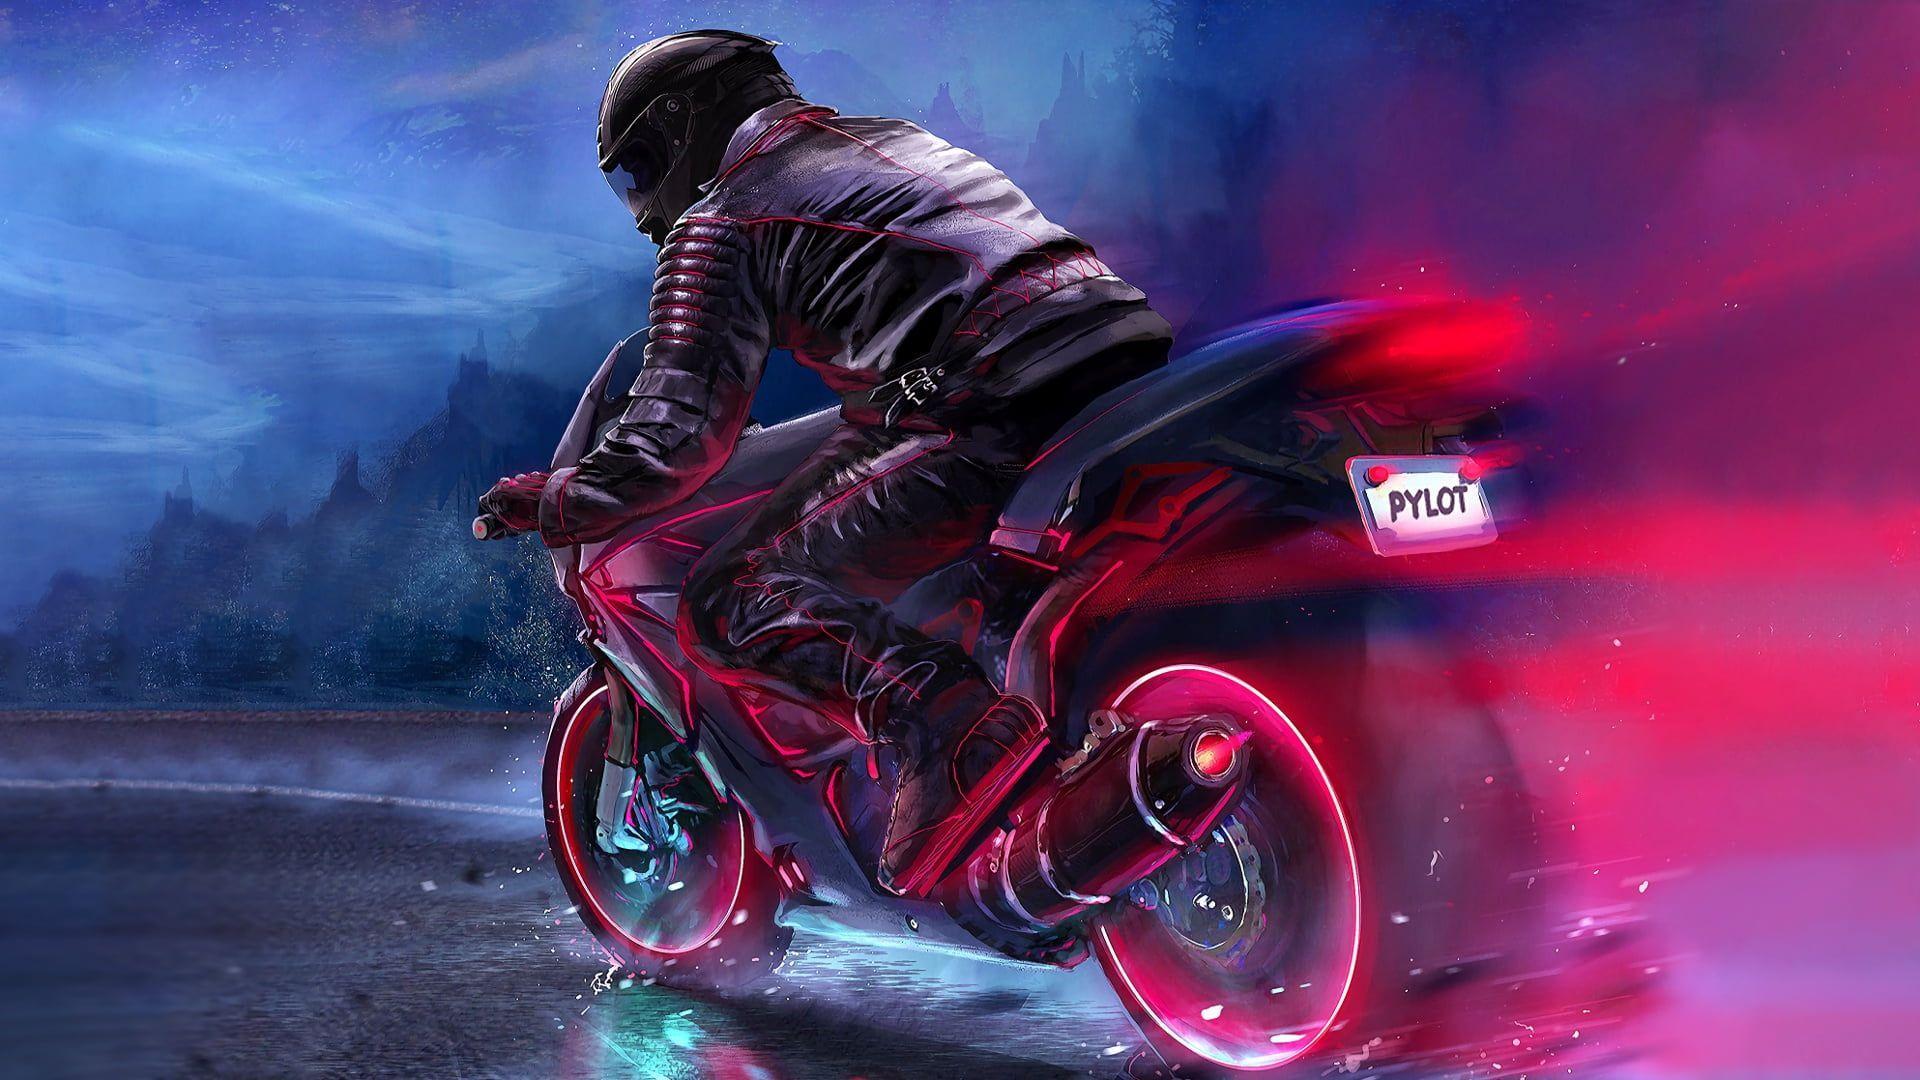 Motorcycle Wallpaper Images  Free Download on Freepik